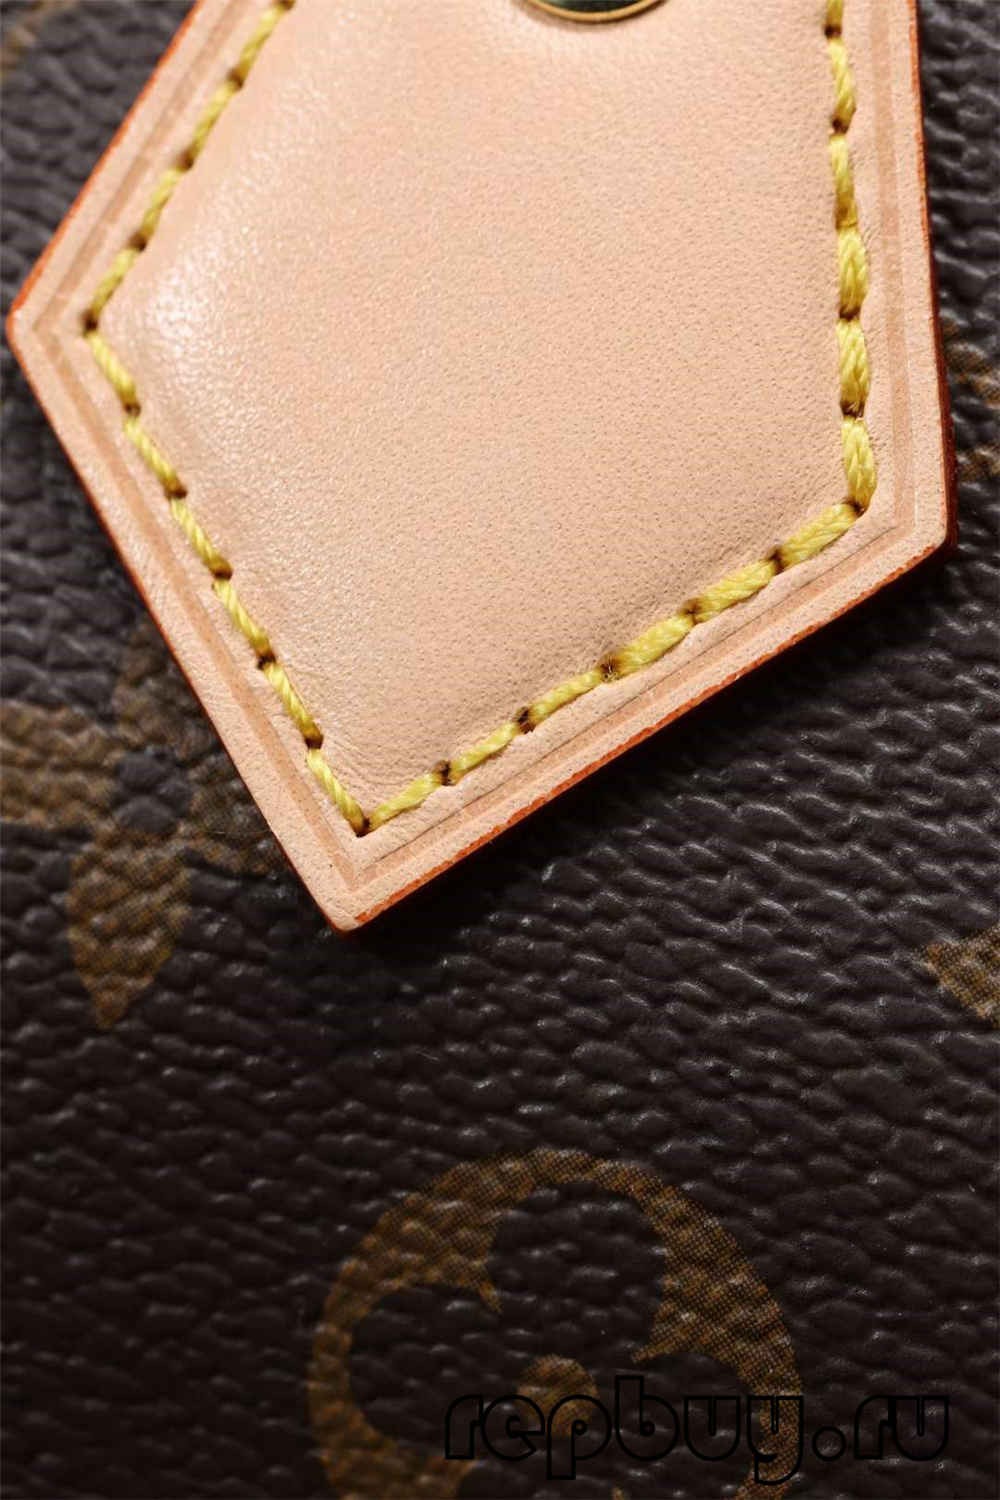 ಅತ್ಯುತ್ತಮ ಗುಣಮಟ್ಟದ ಲೂಯಿ ವಿಟಾನ್ ಸ್ಪೀಡಿ 25 ಬ್ಯಾಗ್ ಪ್ರತಿಕೃತಿ ಆನ್‌ಲೈನ್ ಶಾಪಿಂಗ್ (2022 ನವೀಕರಿಸಲಾಗಿದೆ)-Best Quality Fake Louis Vuitton Bag Online Store, Replica designer bag ru